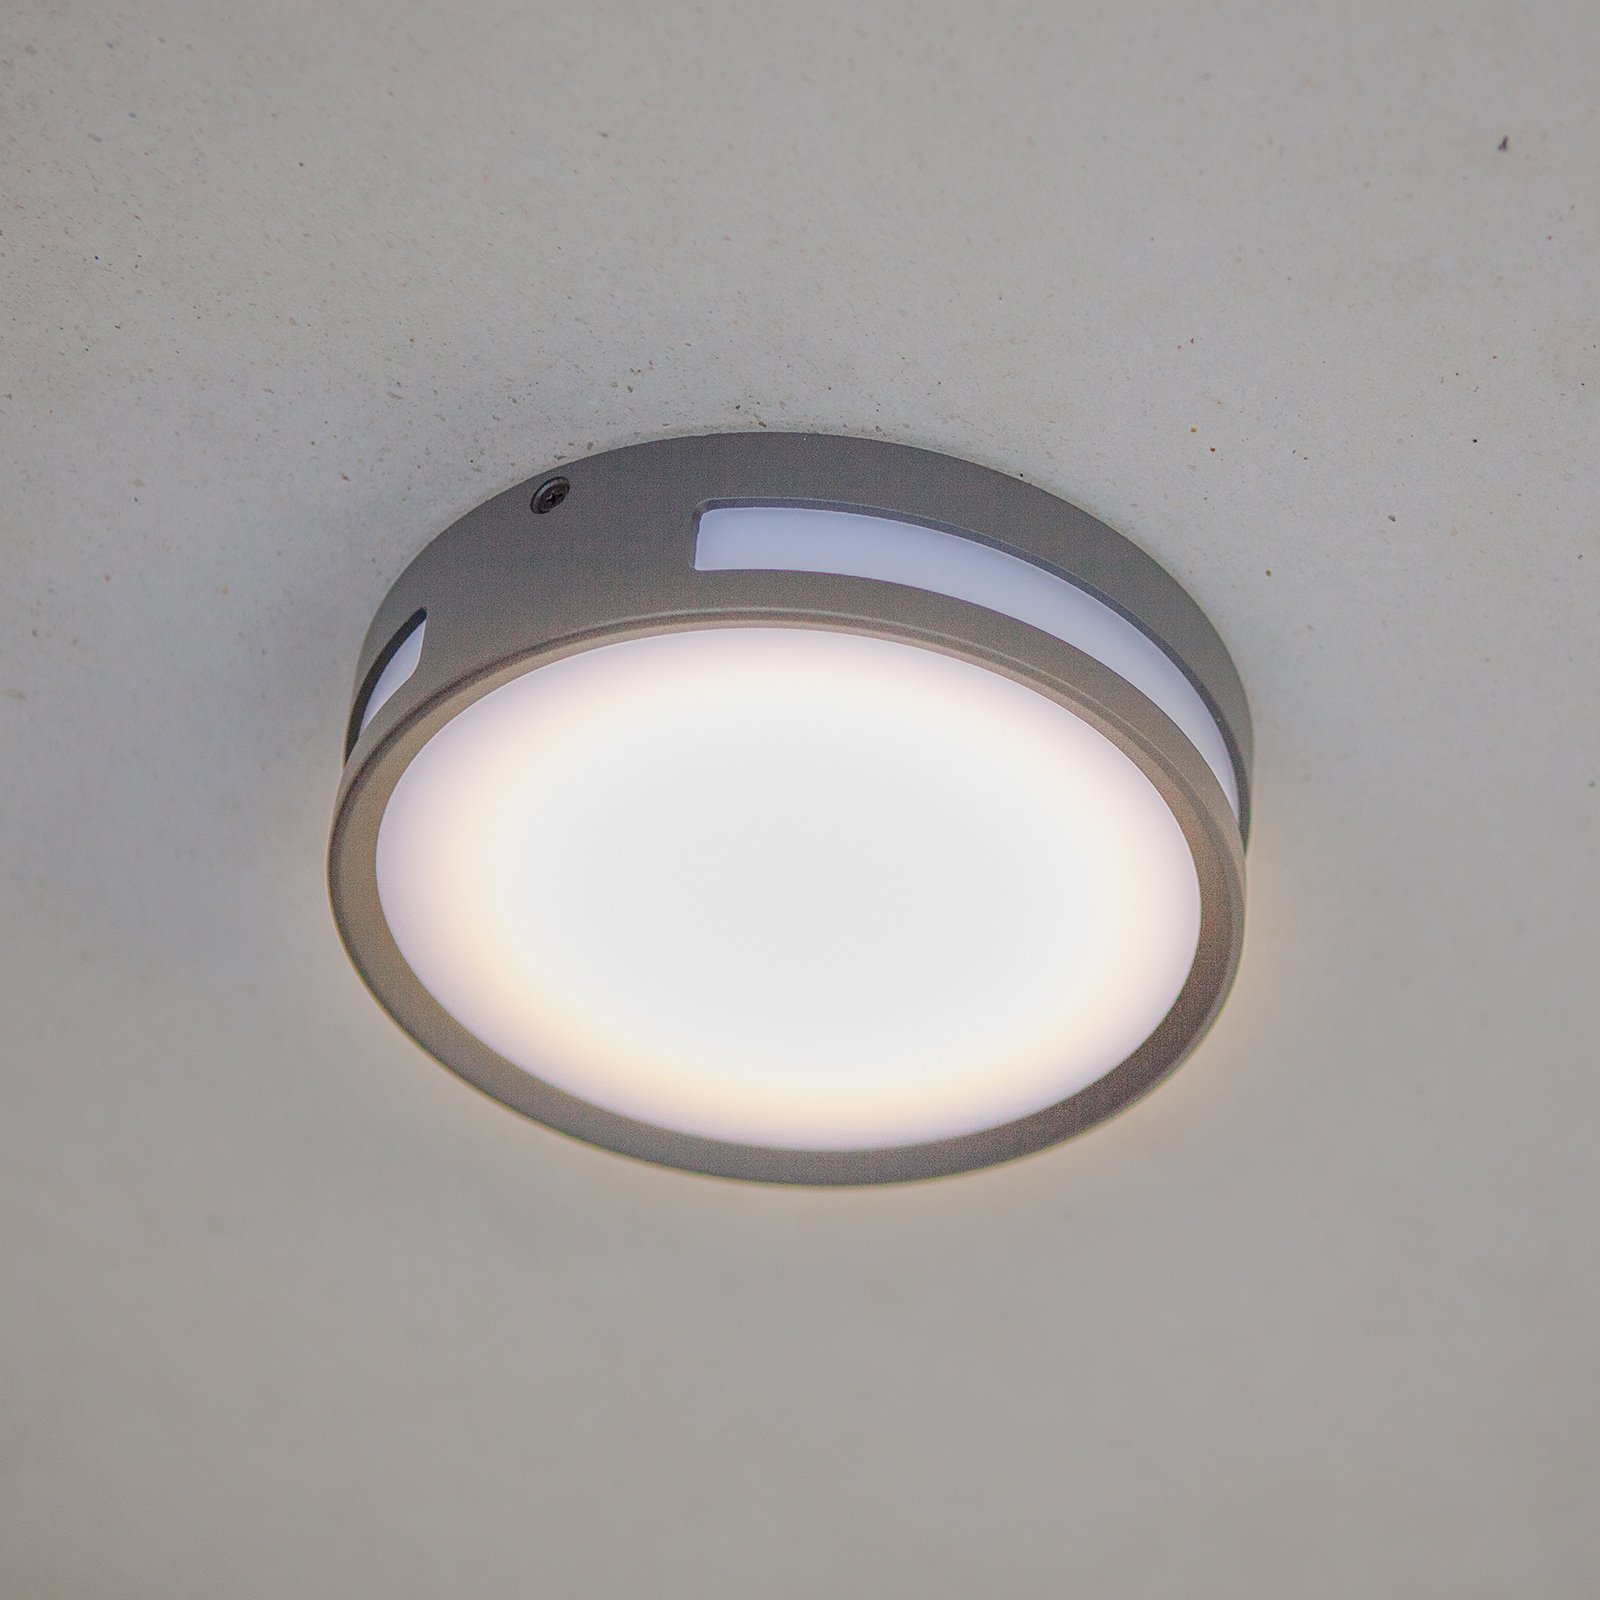 Rola LED stropna svjetiljka vanjska, okrugla